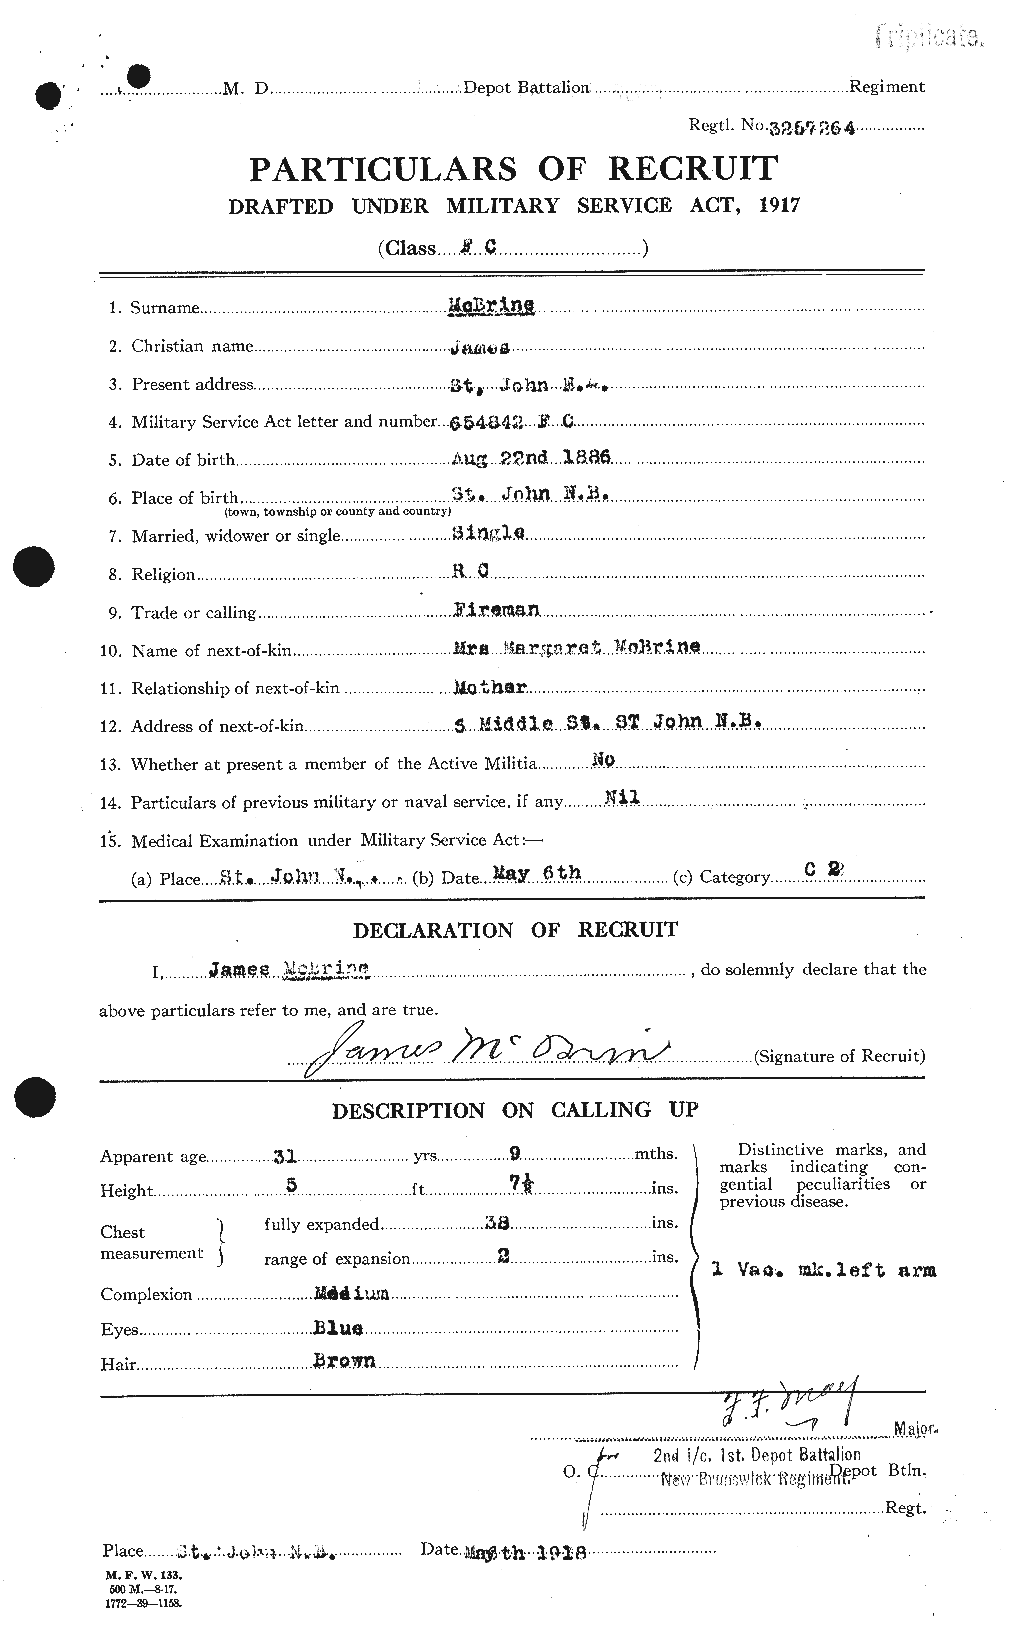 Dossiers du Personnel de la Première Guerre mondiale - CEC 131355a